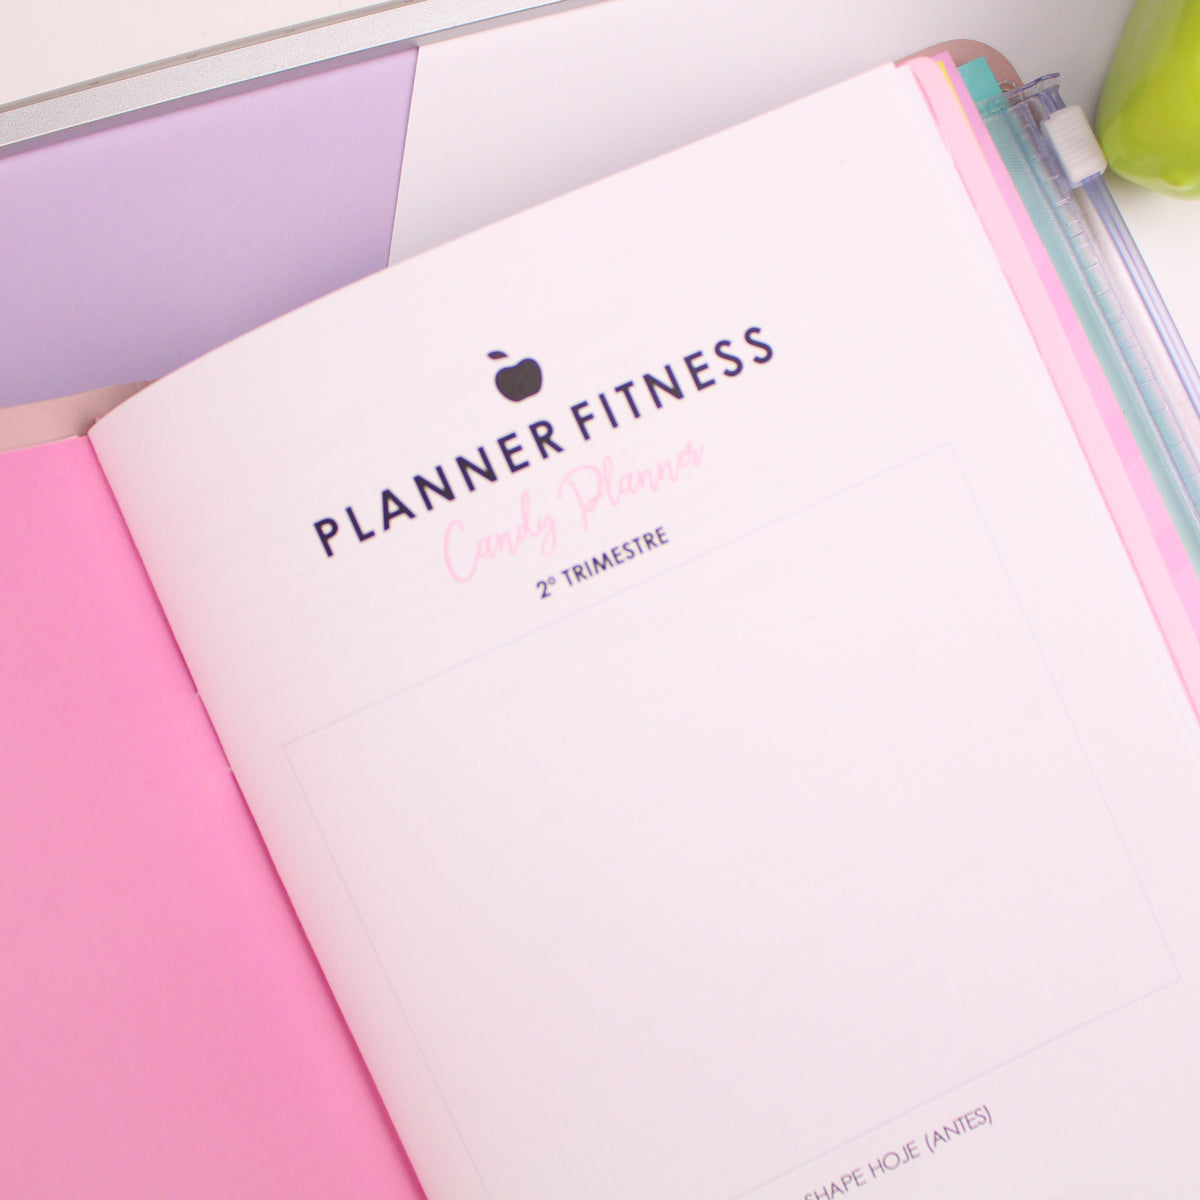 Candy Planner - Miolos Planner Fitness (capa de couro não incluído)